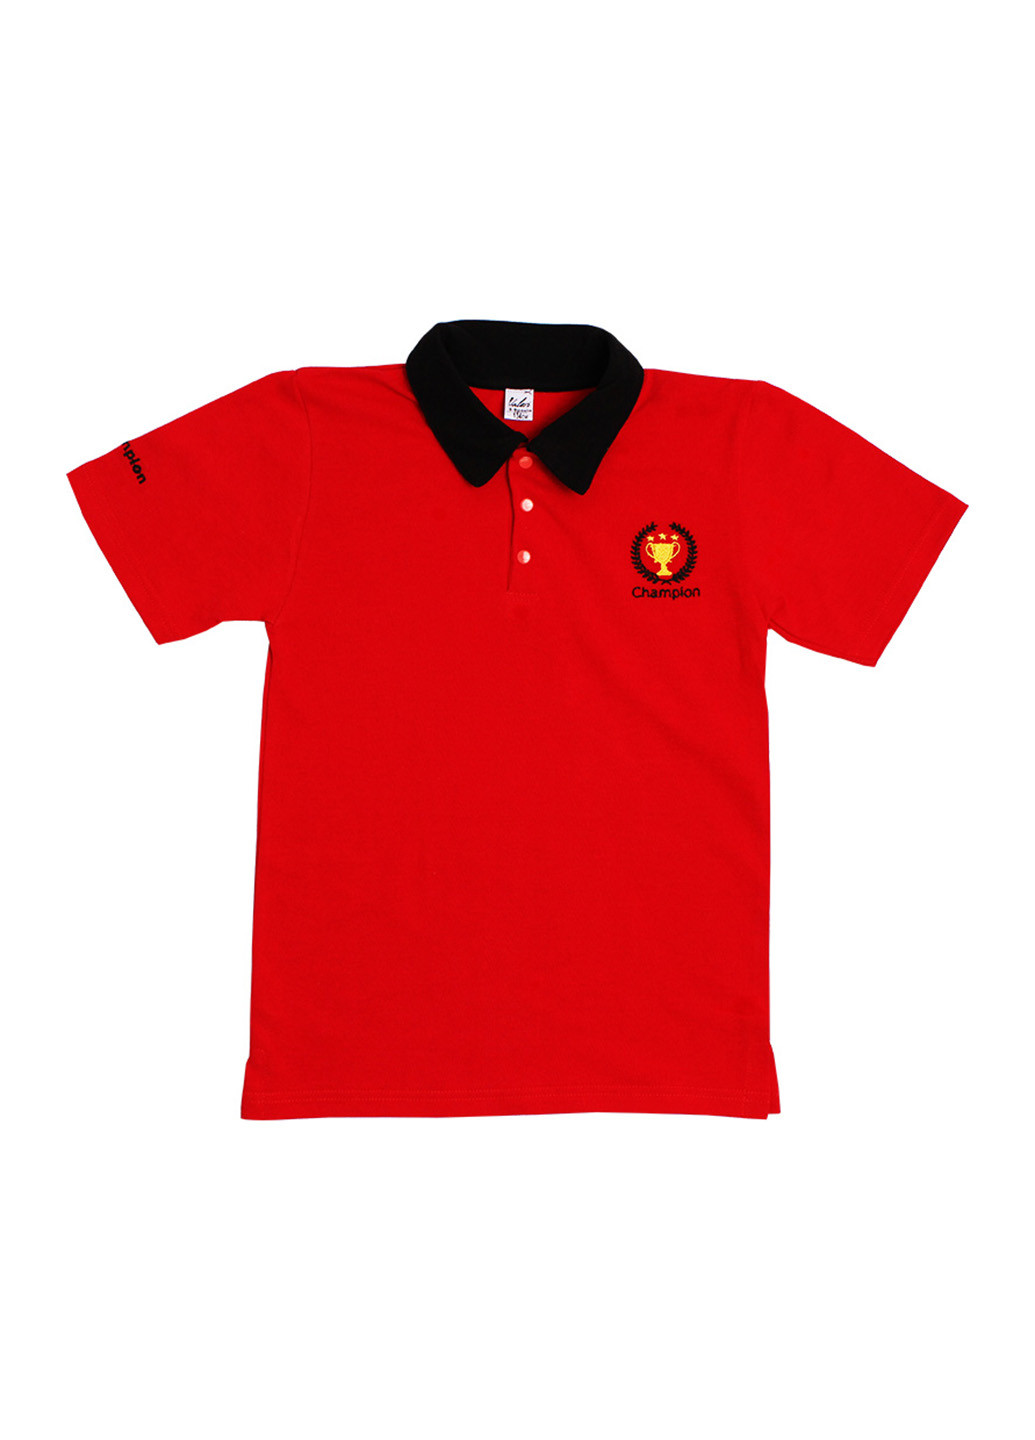 Красная детская футболка-поло для мальчика Валери-Текс с рисунком